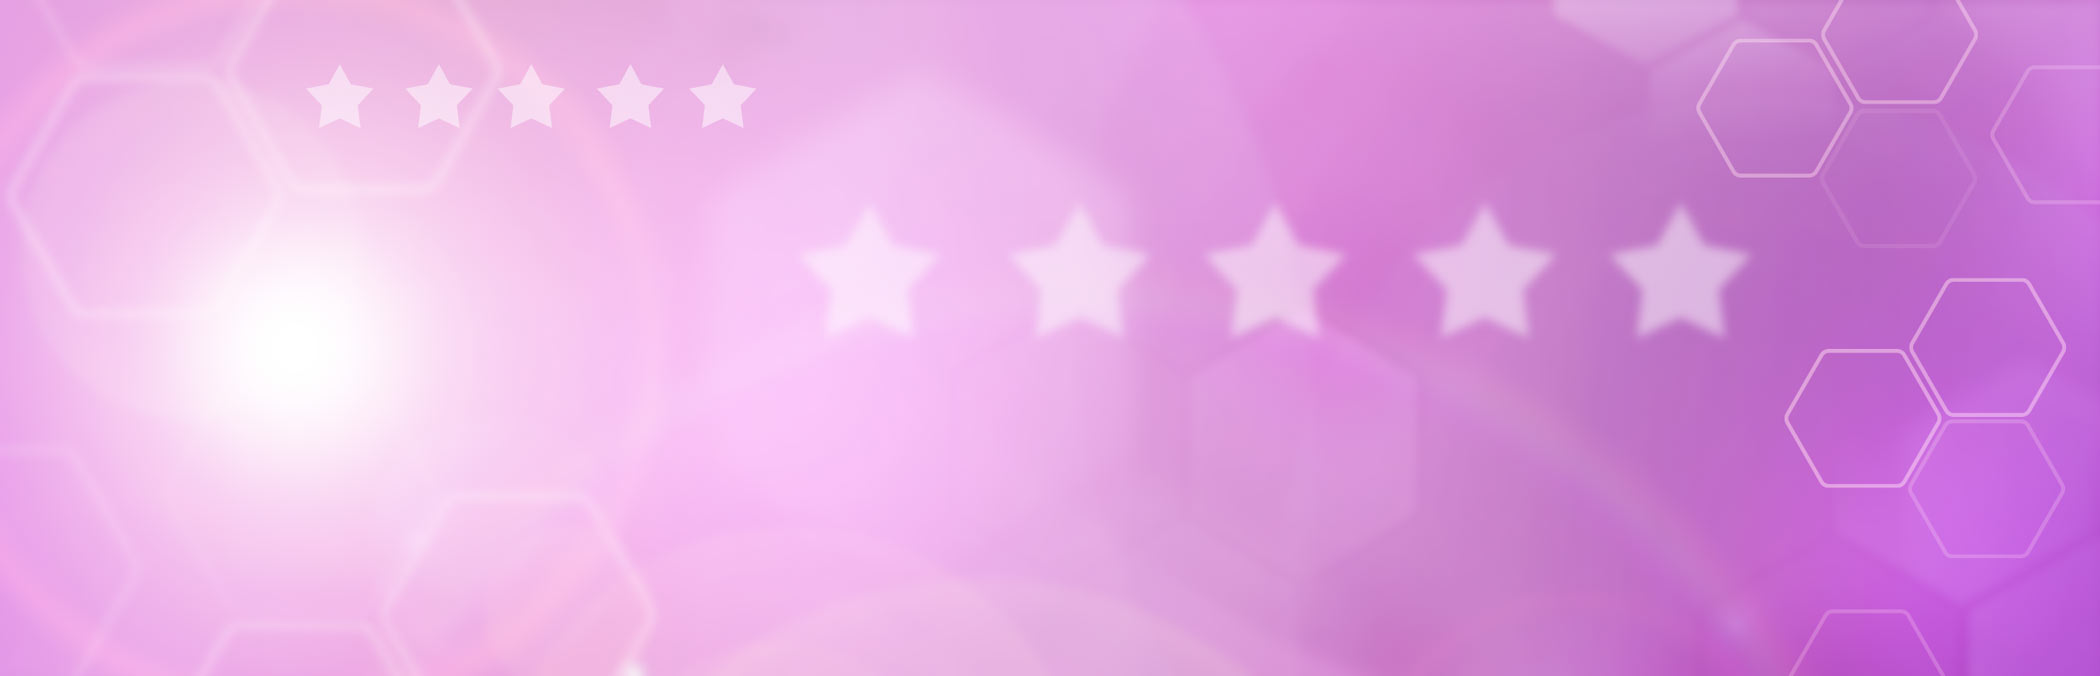 Hintergrund in lila mit Sternen